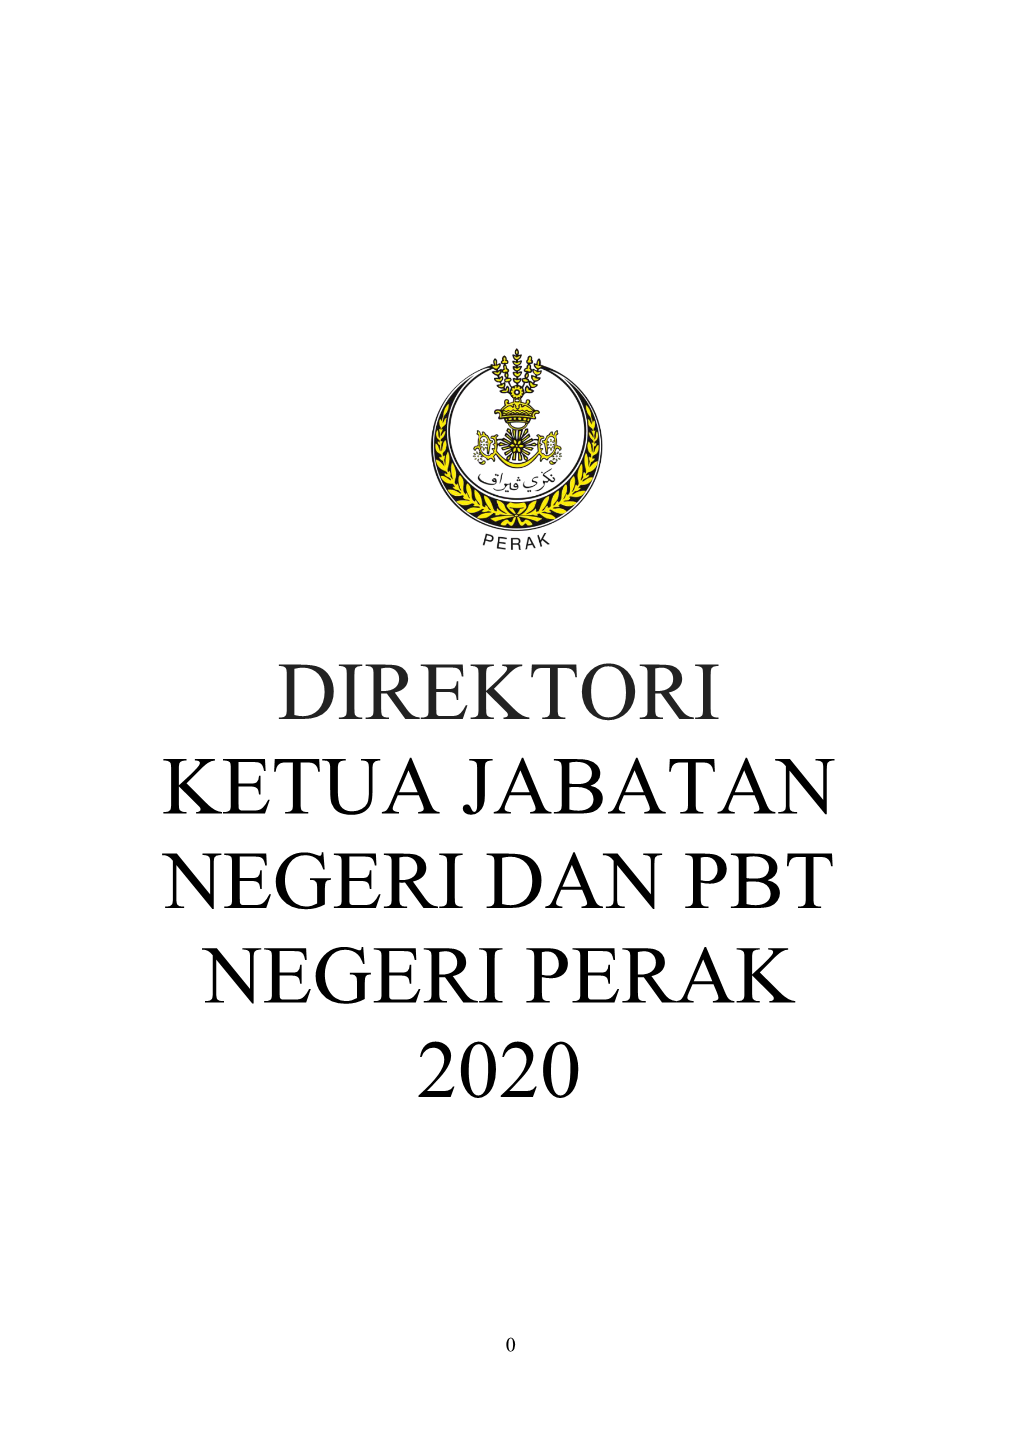 Ketua Jabatan Negeri Dan Pbt Negeri Perak 2020